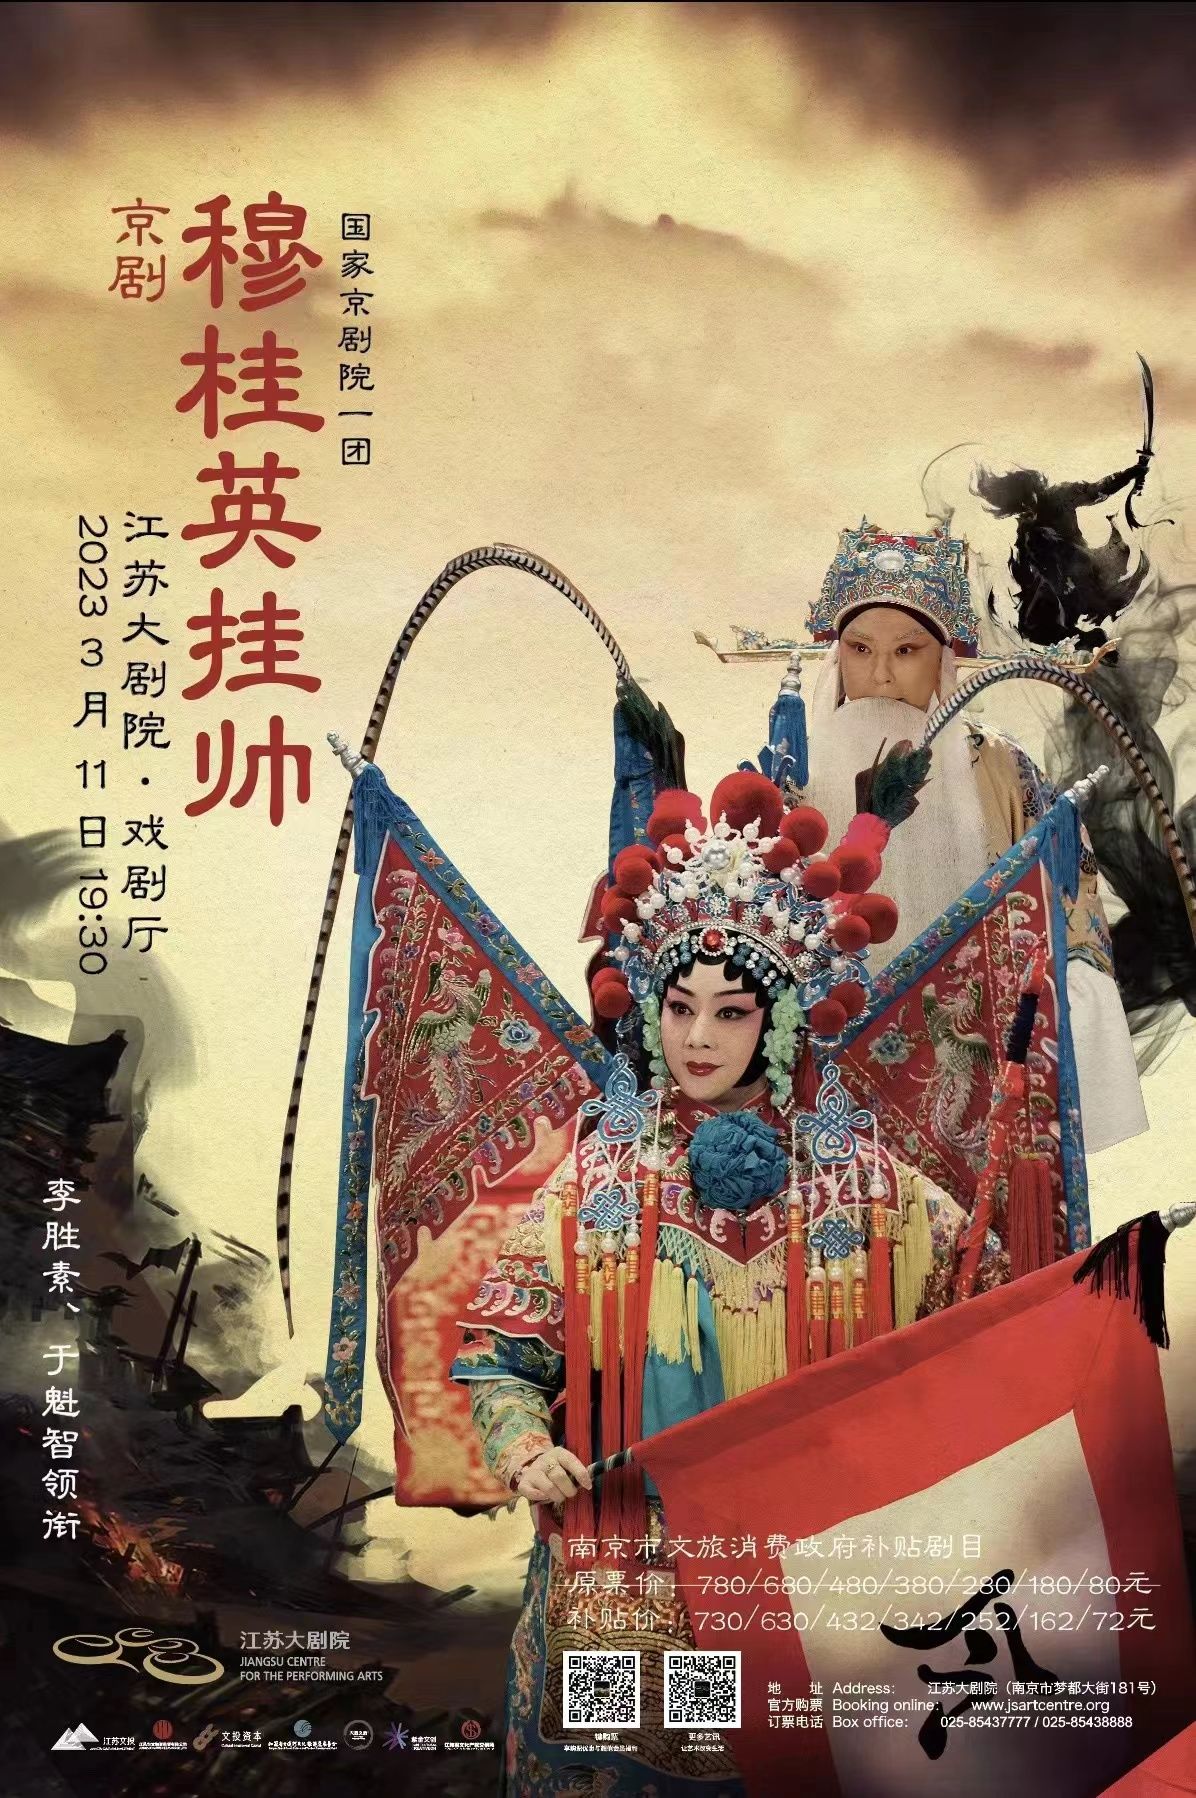 于魁智、李胜素领衔 国家京剧院一团经典剧目《穆桂英挂帅》